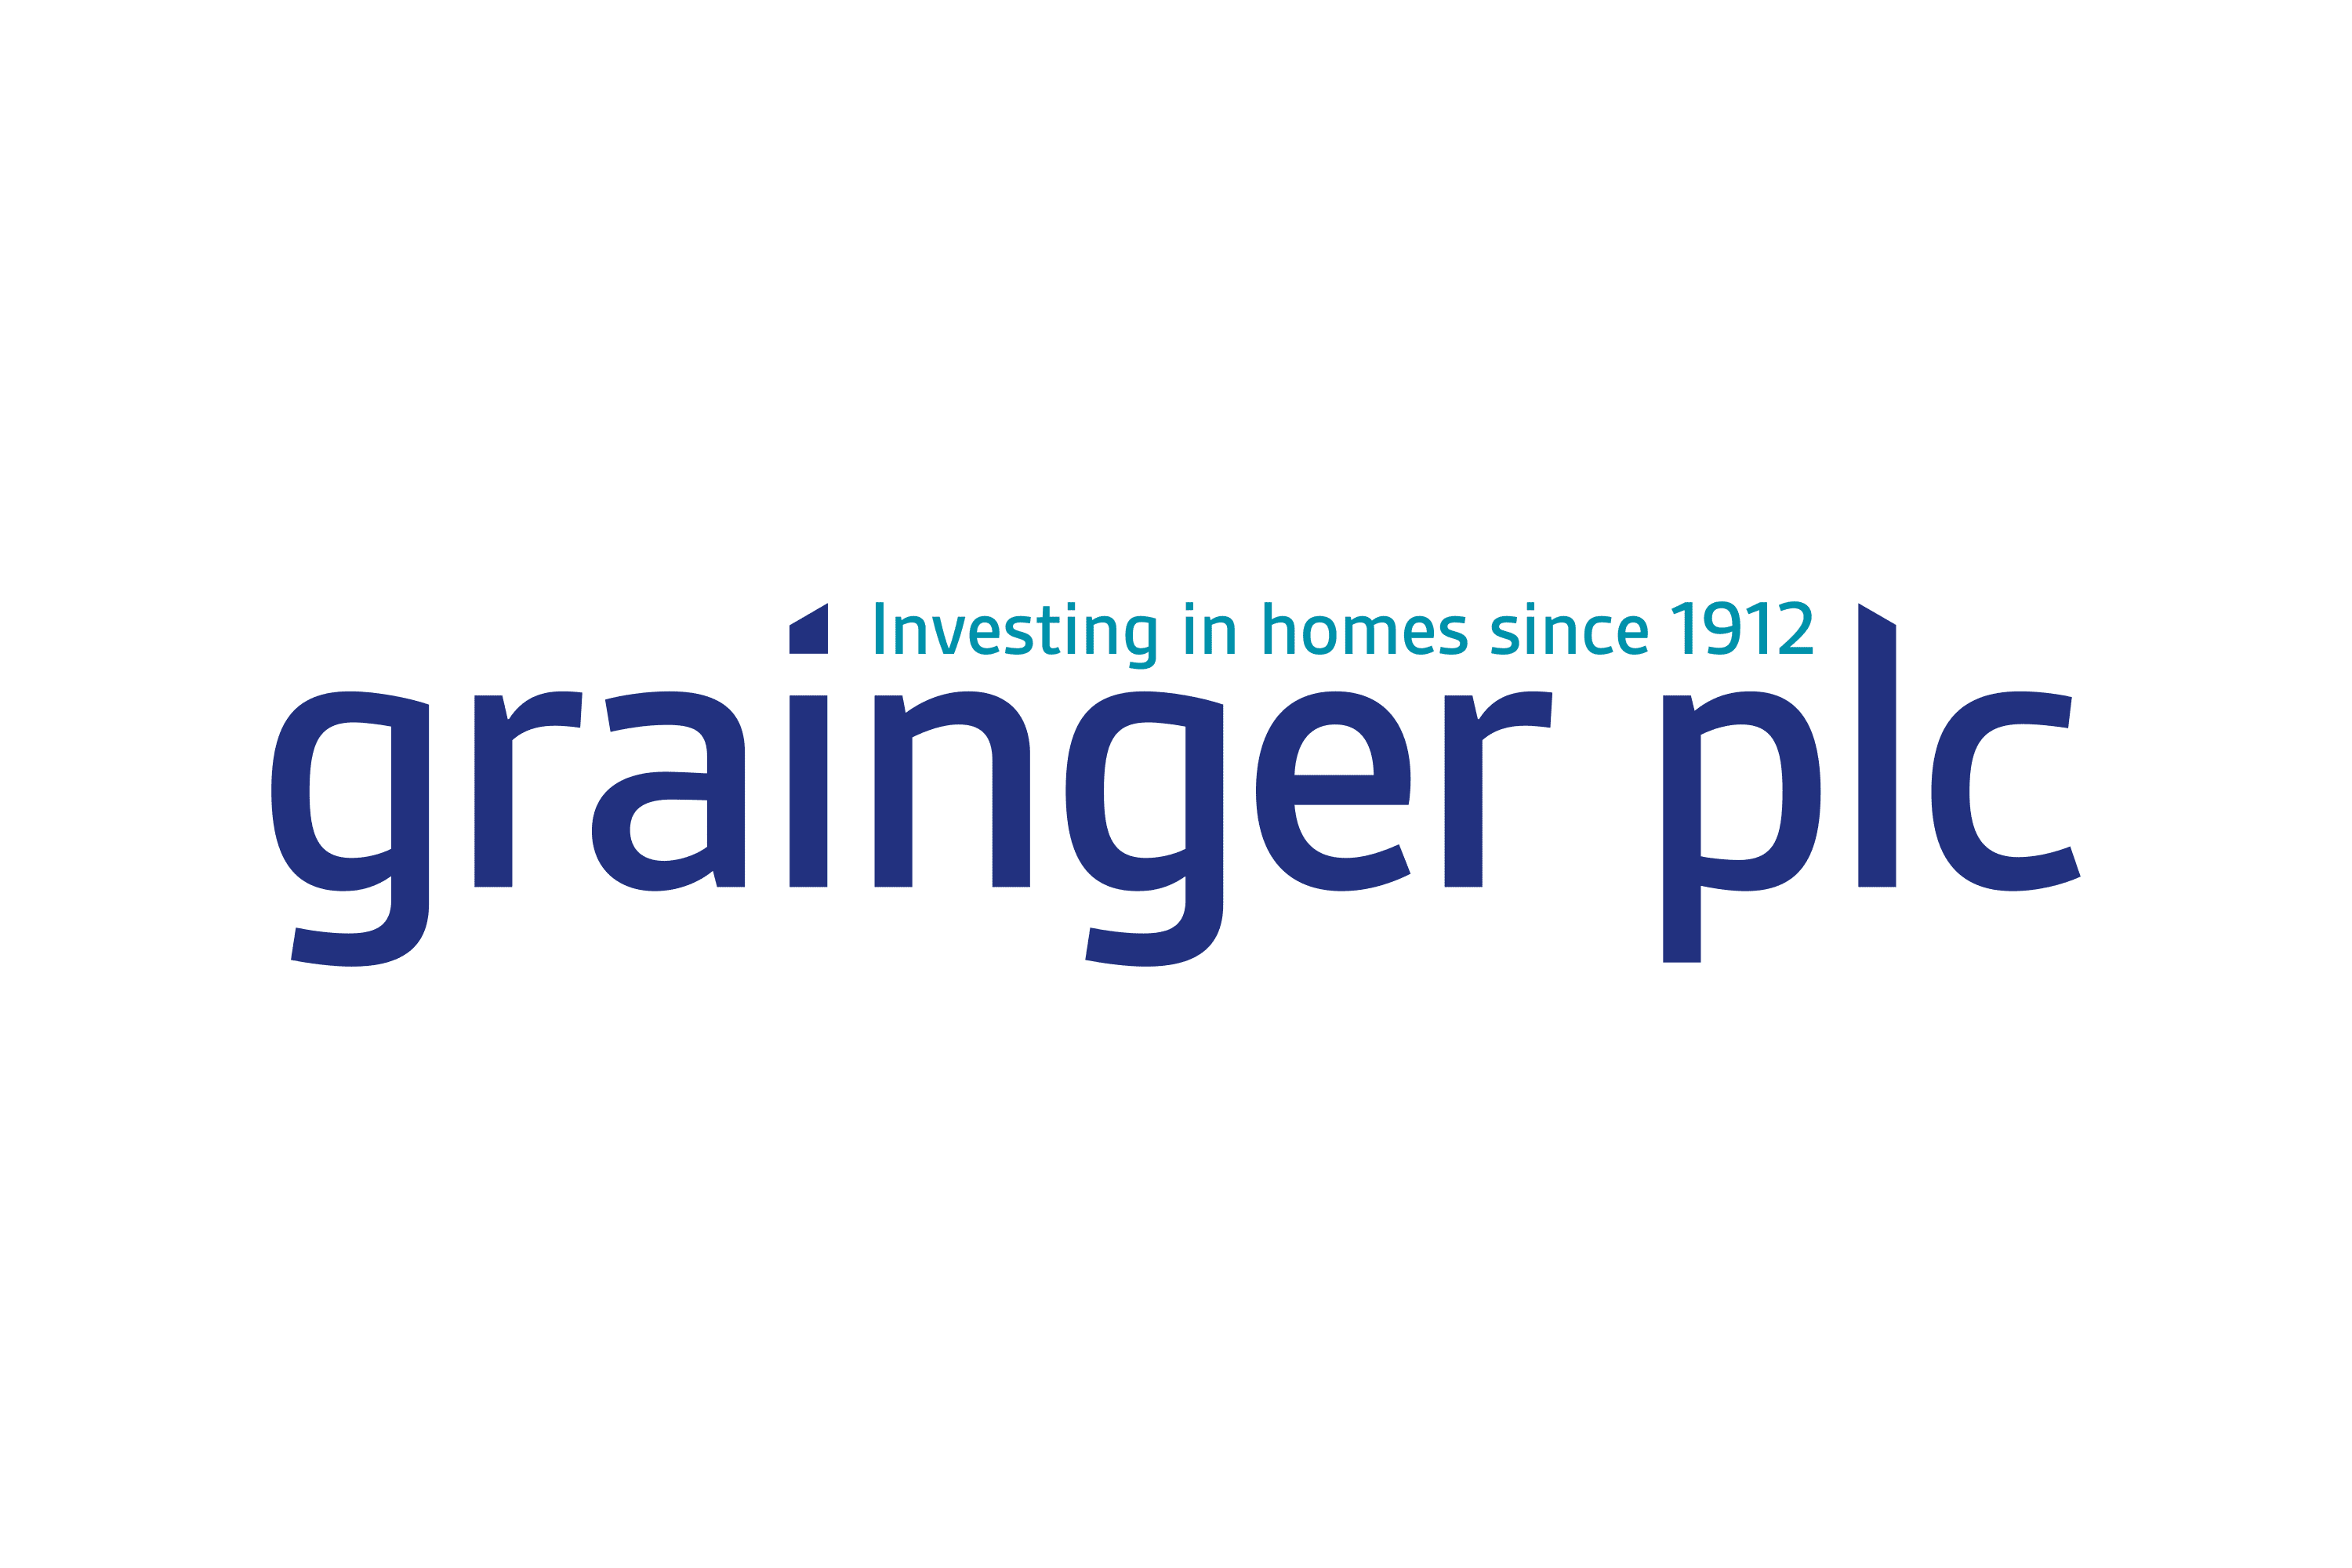 grainger plc